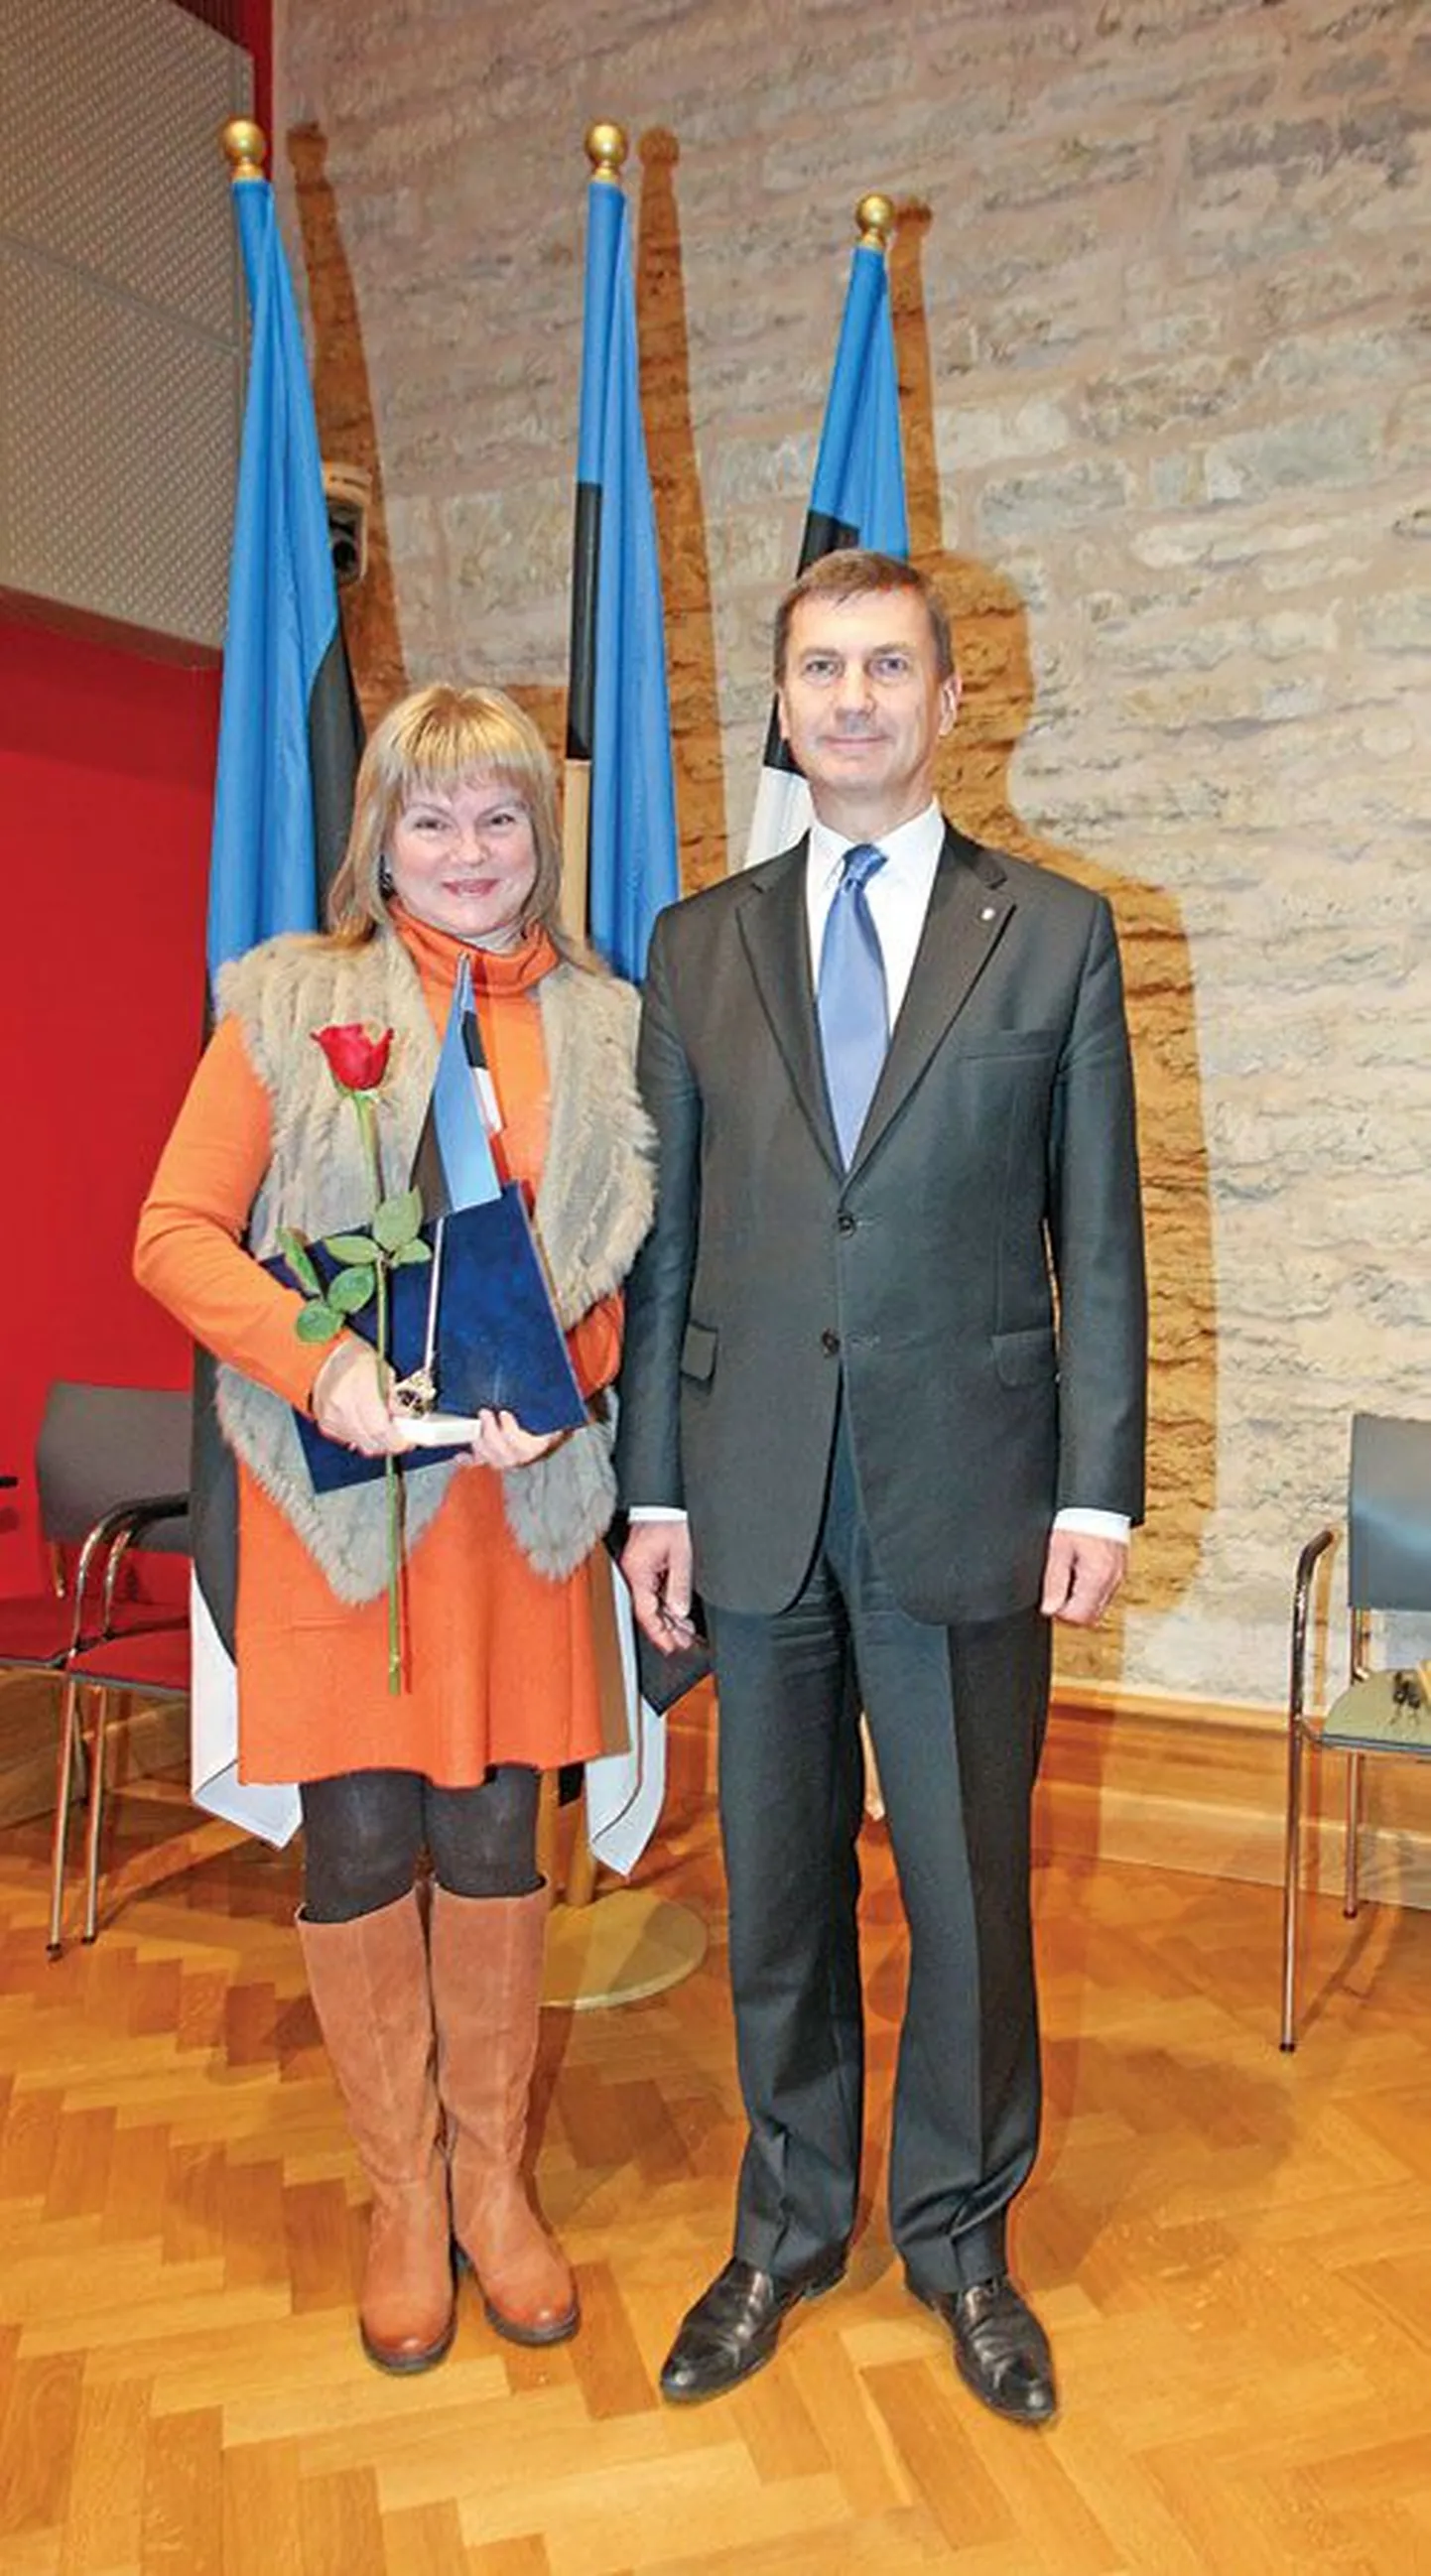 Фотография на память: новая гражданка Эстонии Наталья Сироткина и премьер-министр Эстонии Андрус Ансип.